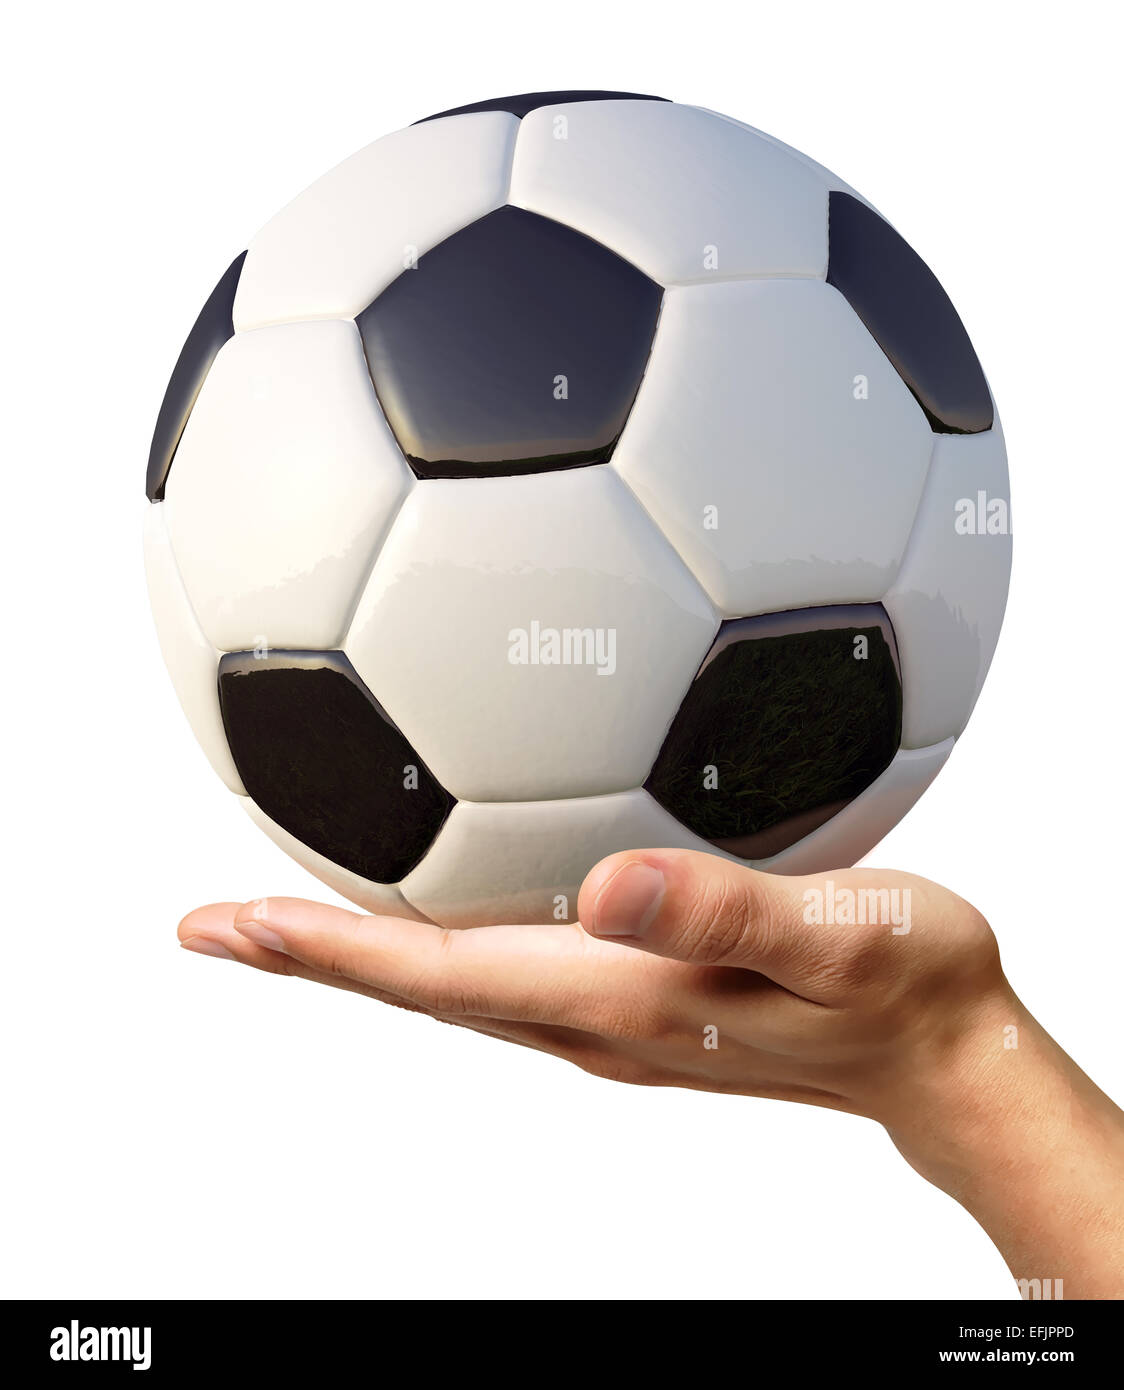 La main de l'homme tenant un ballon de soccer sur palm, vue d'un côté. Sur fond blanc. Chemin de détourage inclus. Banque D'Images